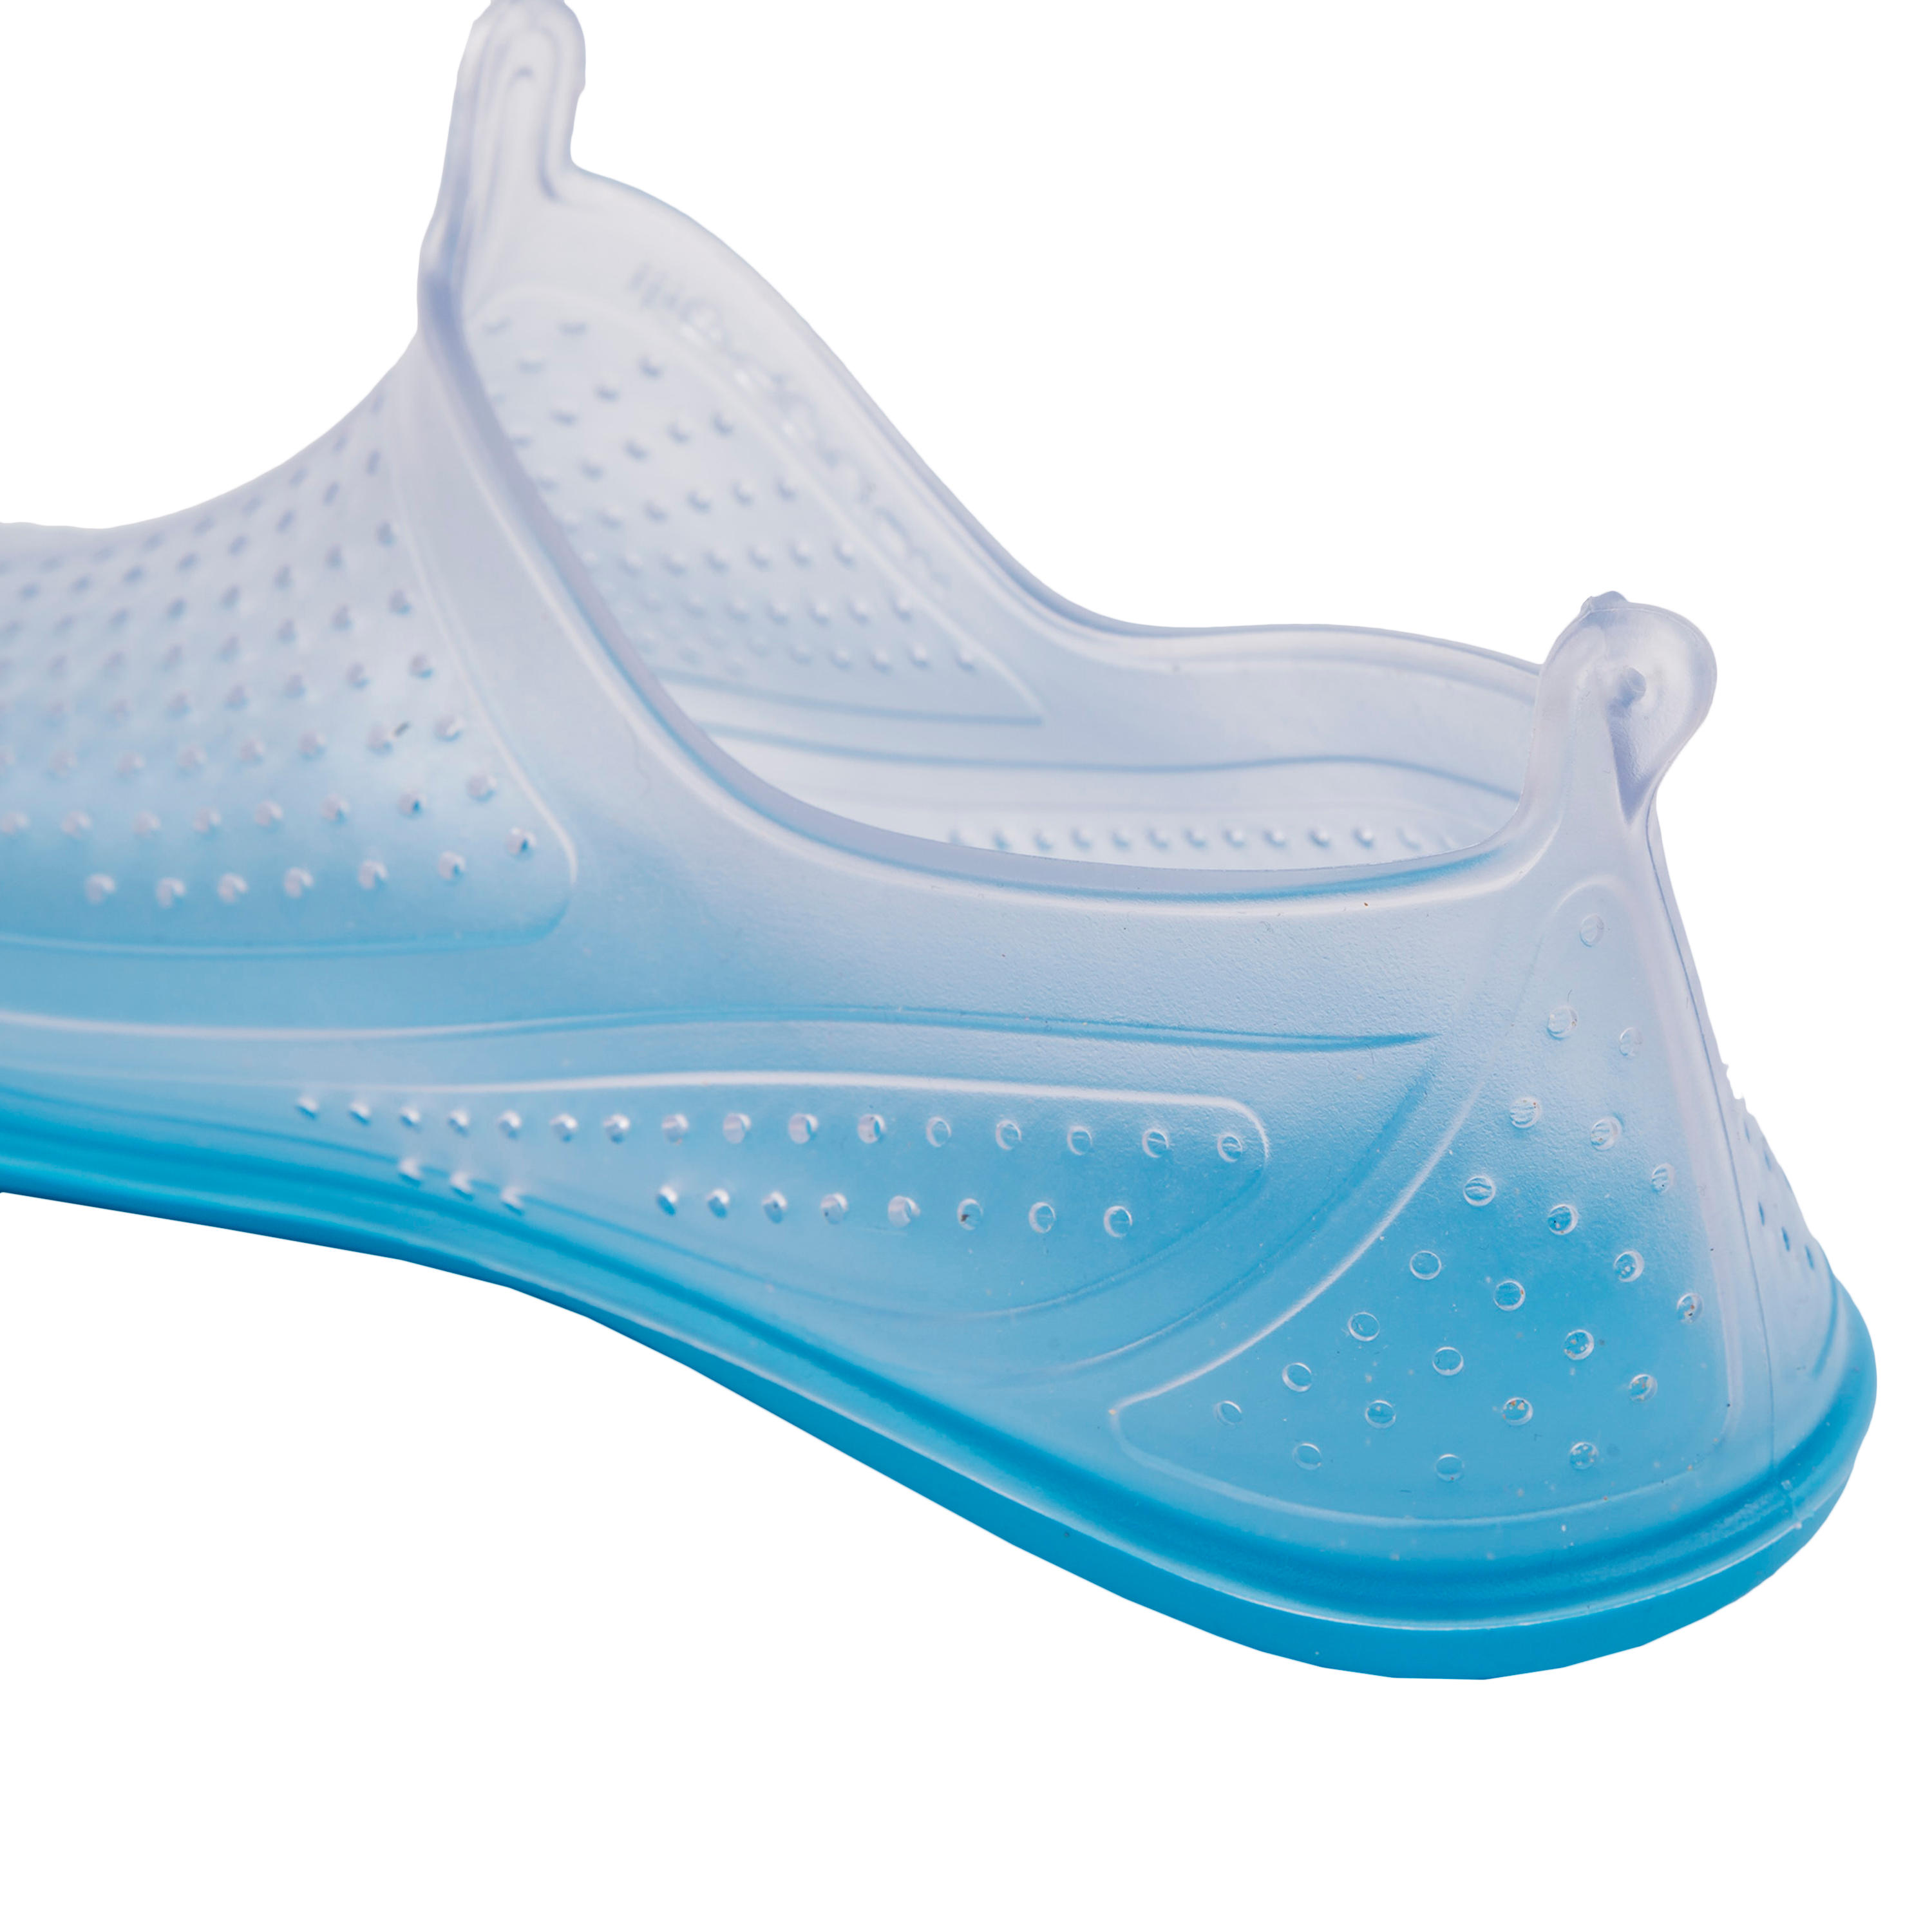 Aquabiking-Aquafit Water Shoes Aquafun Transparent 4/5